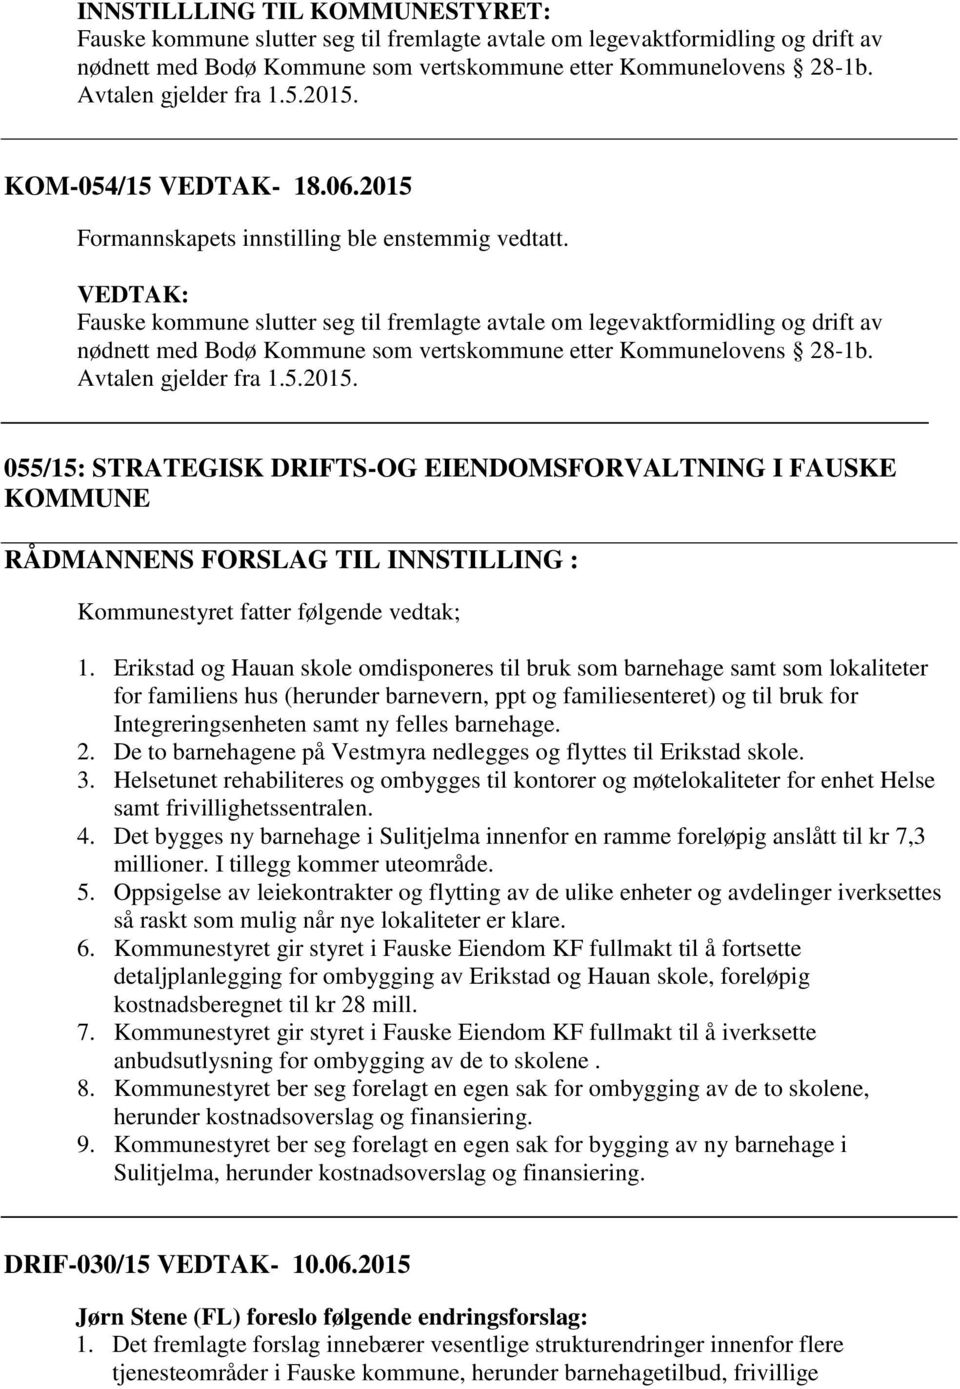 VEDTAK: Fauske kommune slutter seg til fremlagte avtale om legevaktformidling og drift av nødnett med Bodø Kommune som vertskommune etter Kommunelovens 28-1b. Avtalen gjelder fra 1.5.2015.